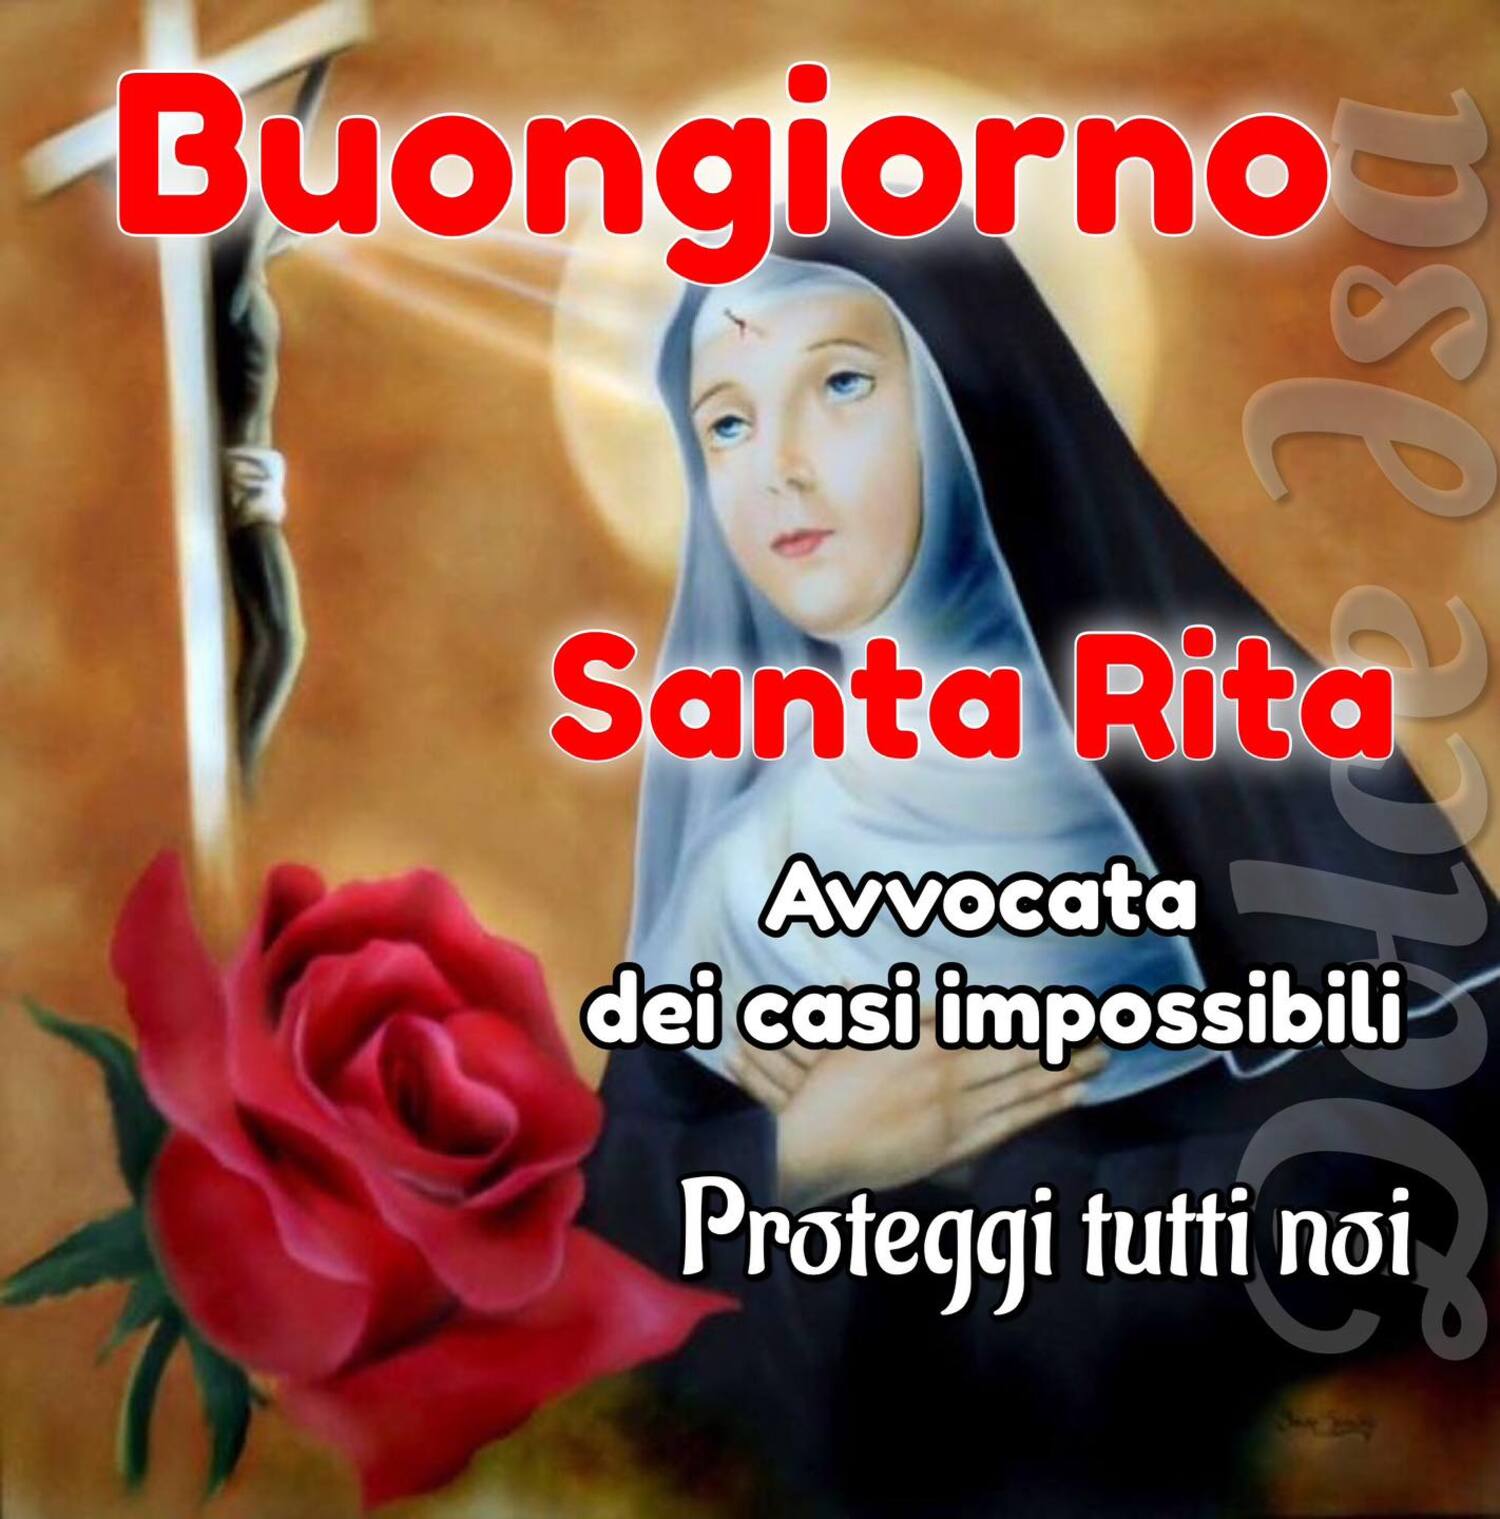 Buongiorno Santa Rita Avvocata dei casi impossibili proteggi tutti noi